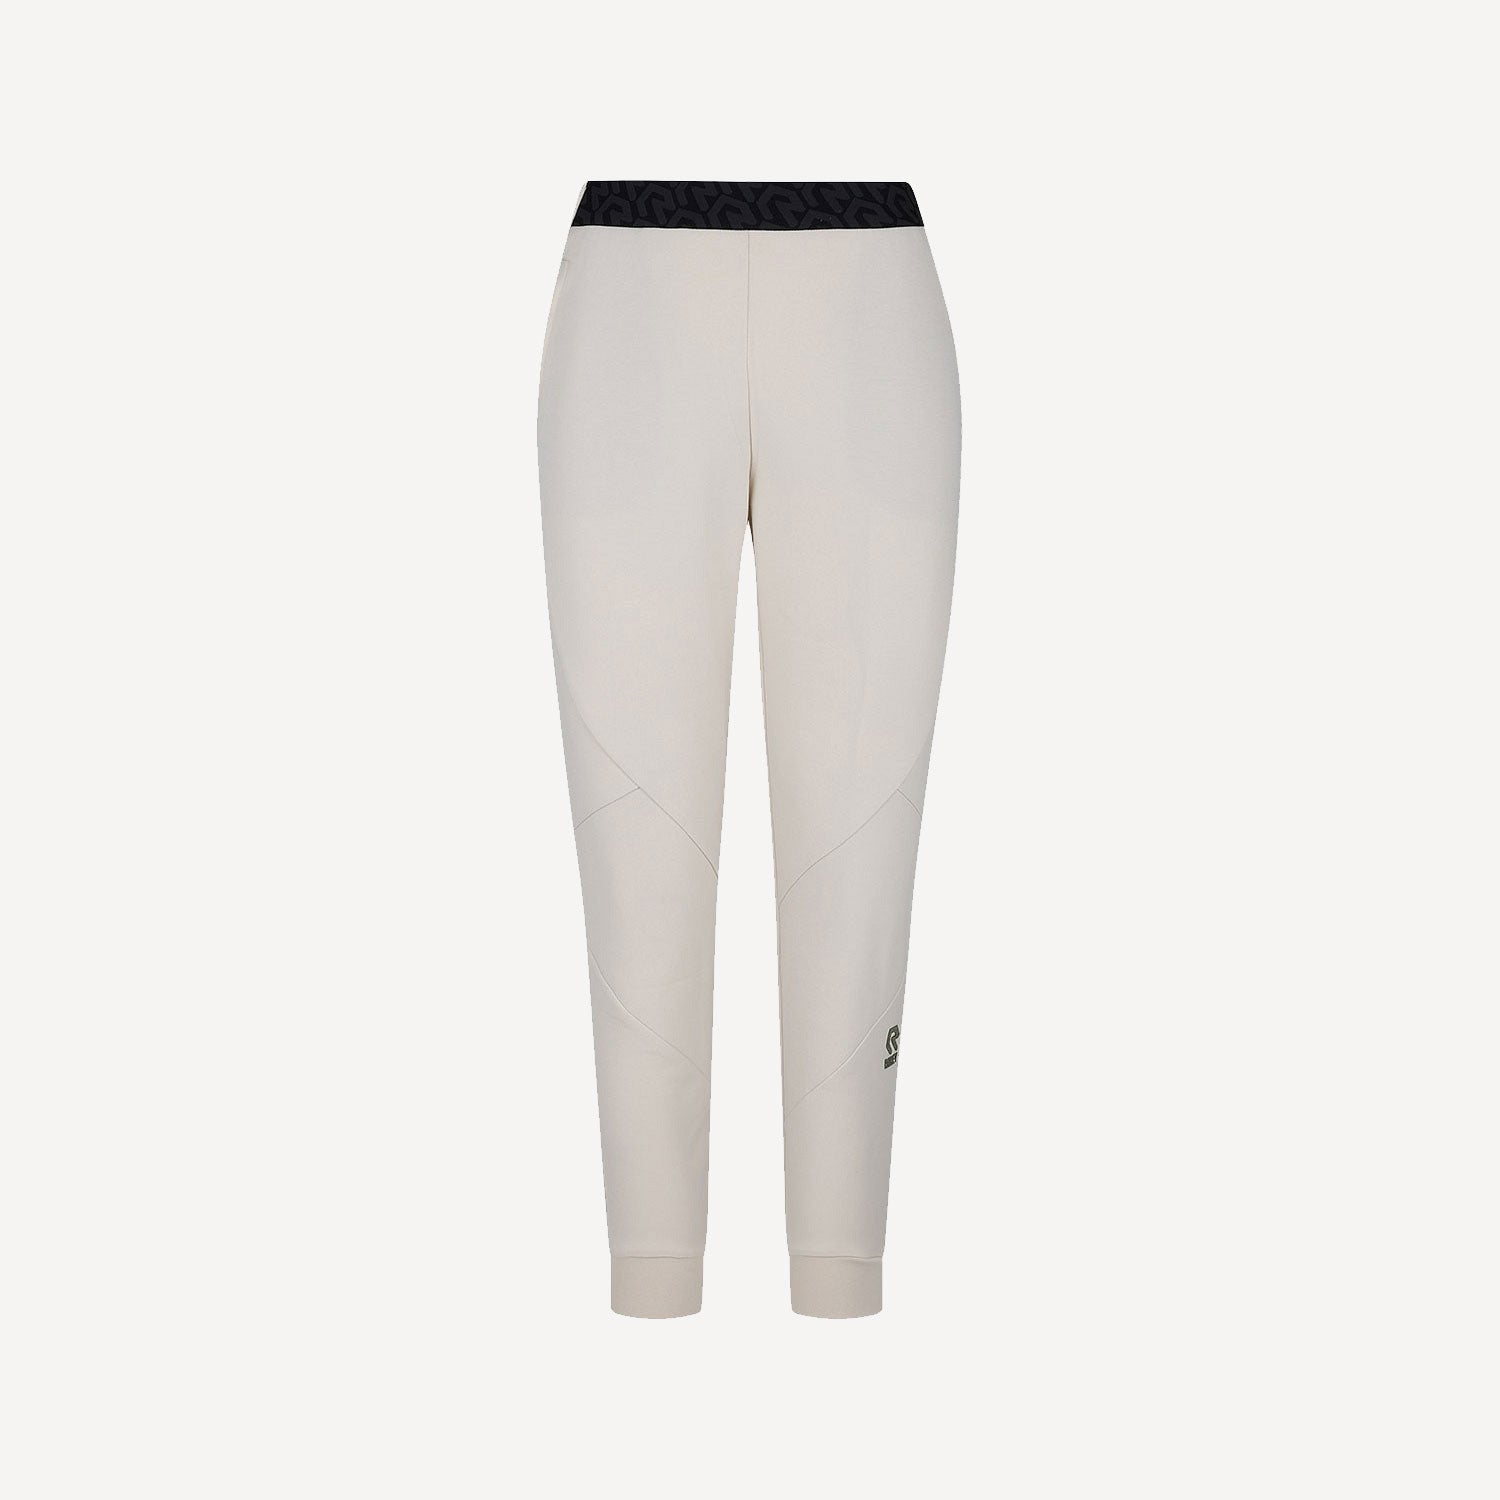 Robey Scuba Women's Cotton Pants - White (1)